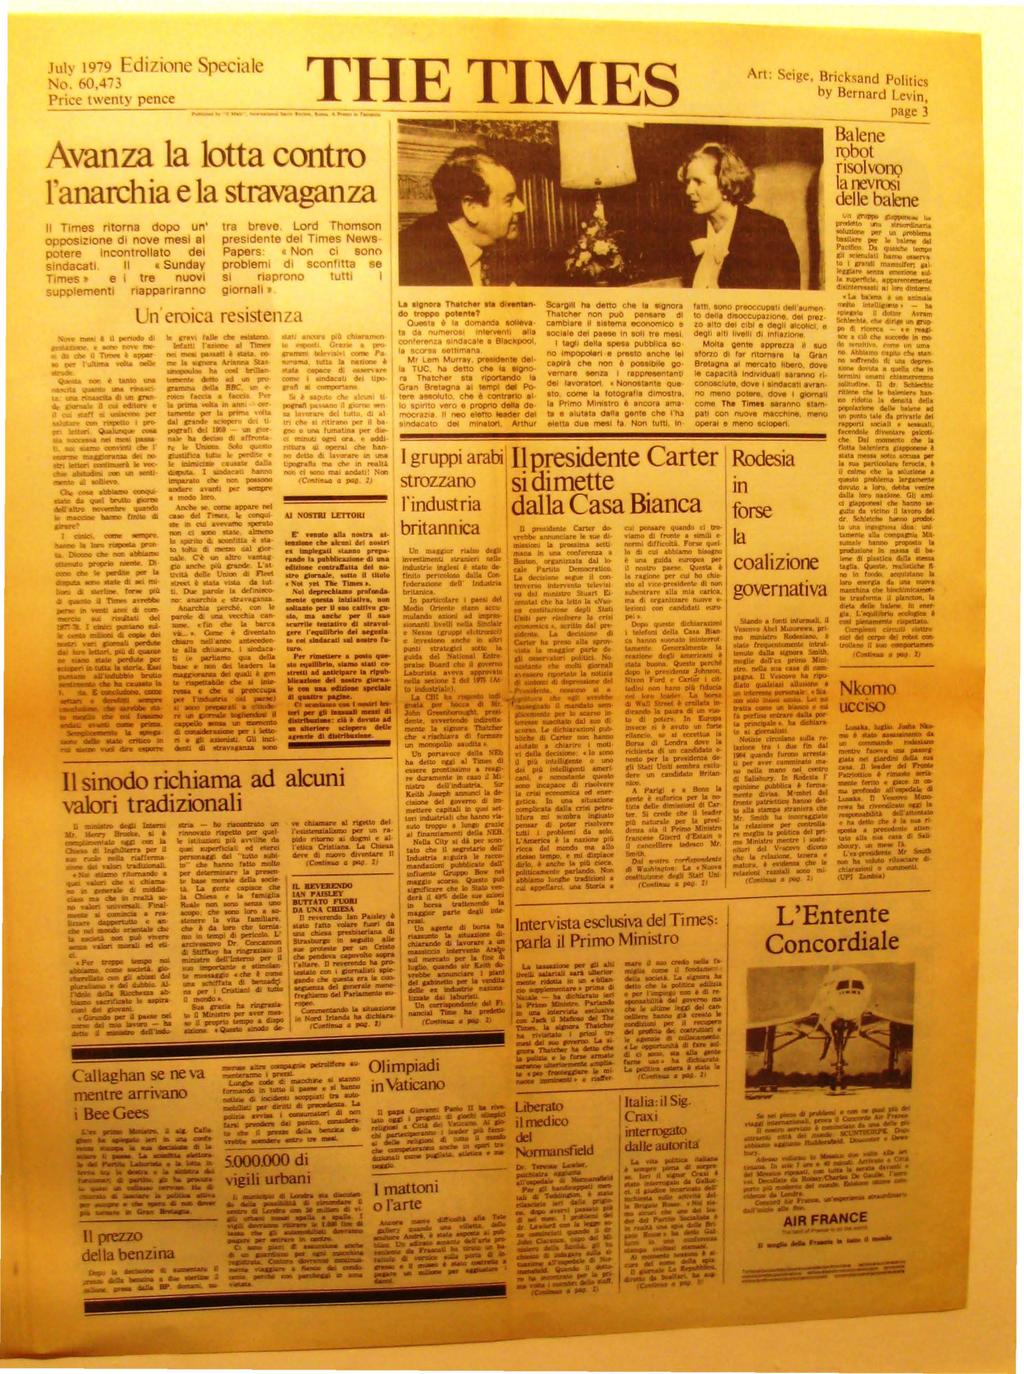 July 1979 Edizione Speciale No.